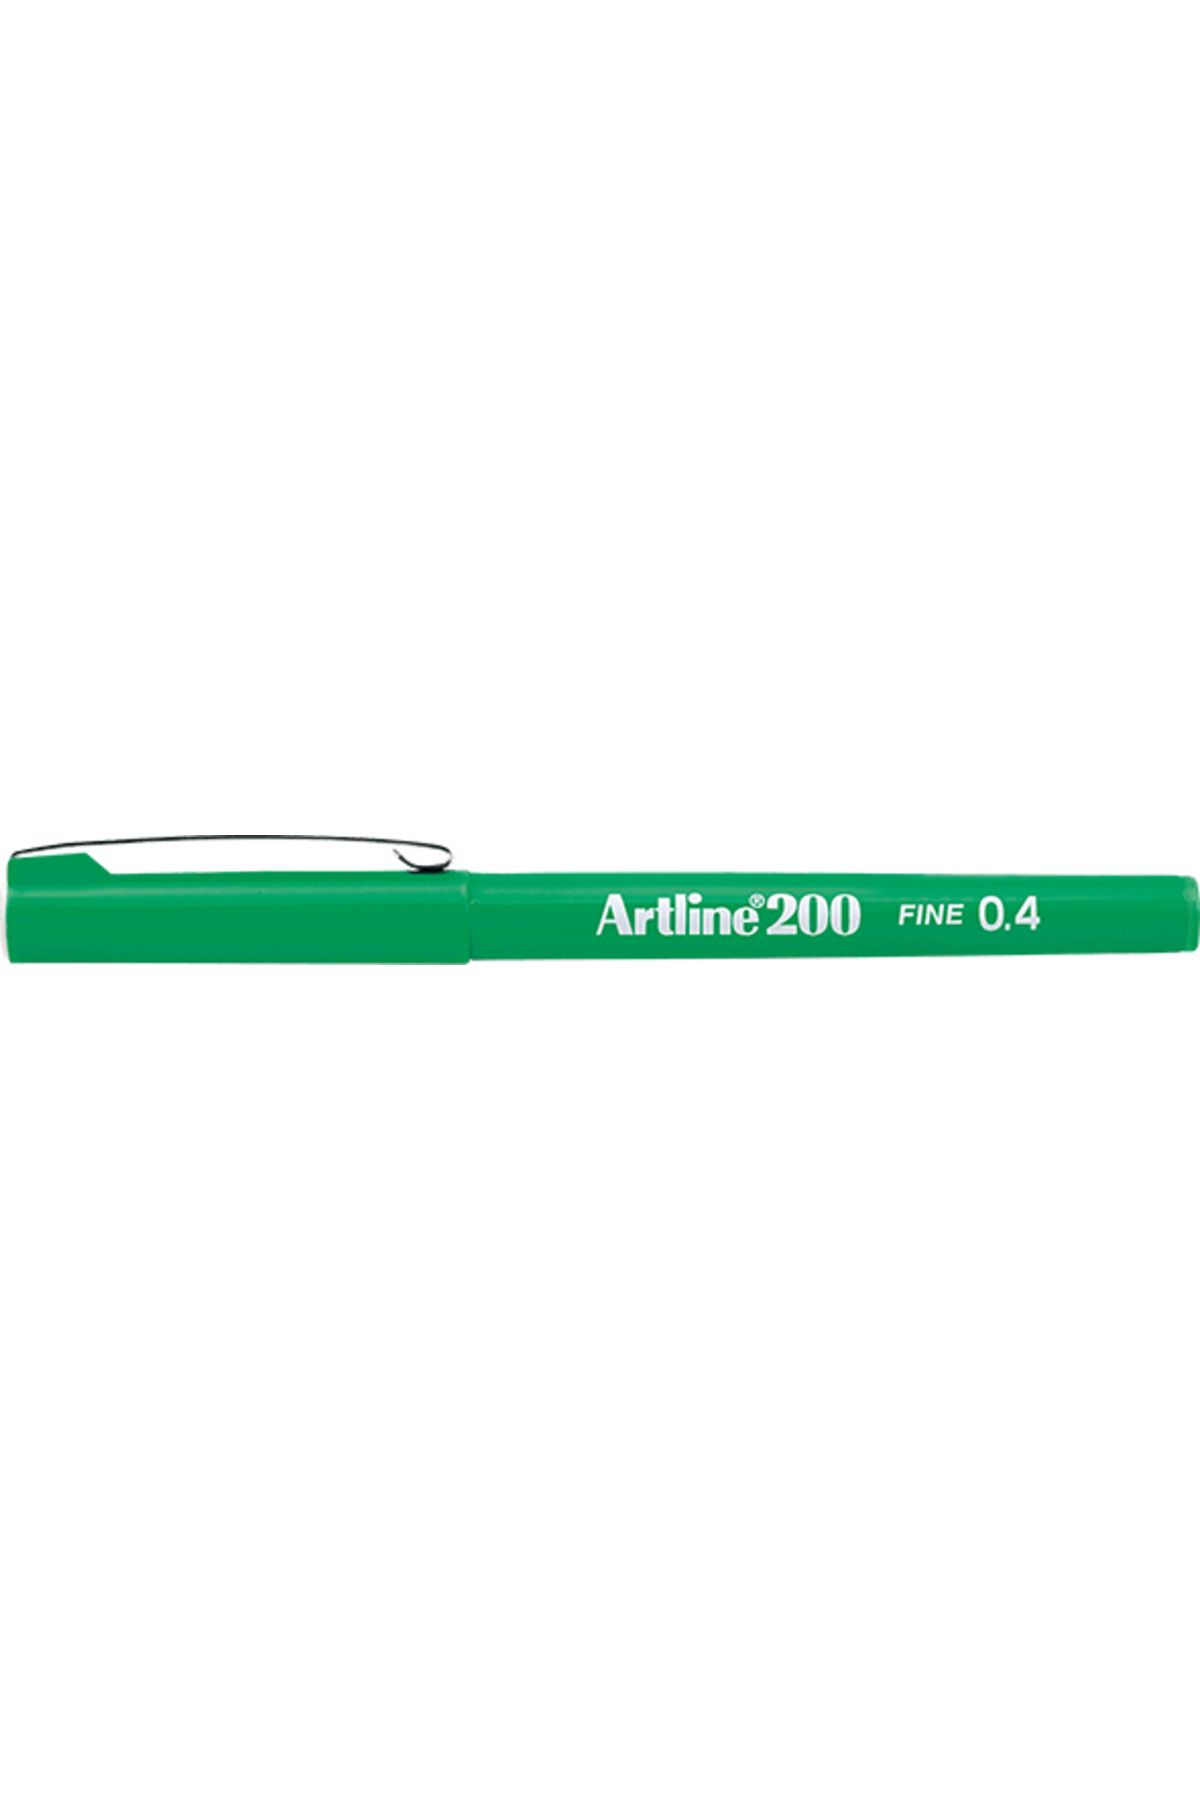 artline 200 Fineliner 0.4mm Keçe Uçlu Kalem Yeşil